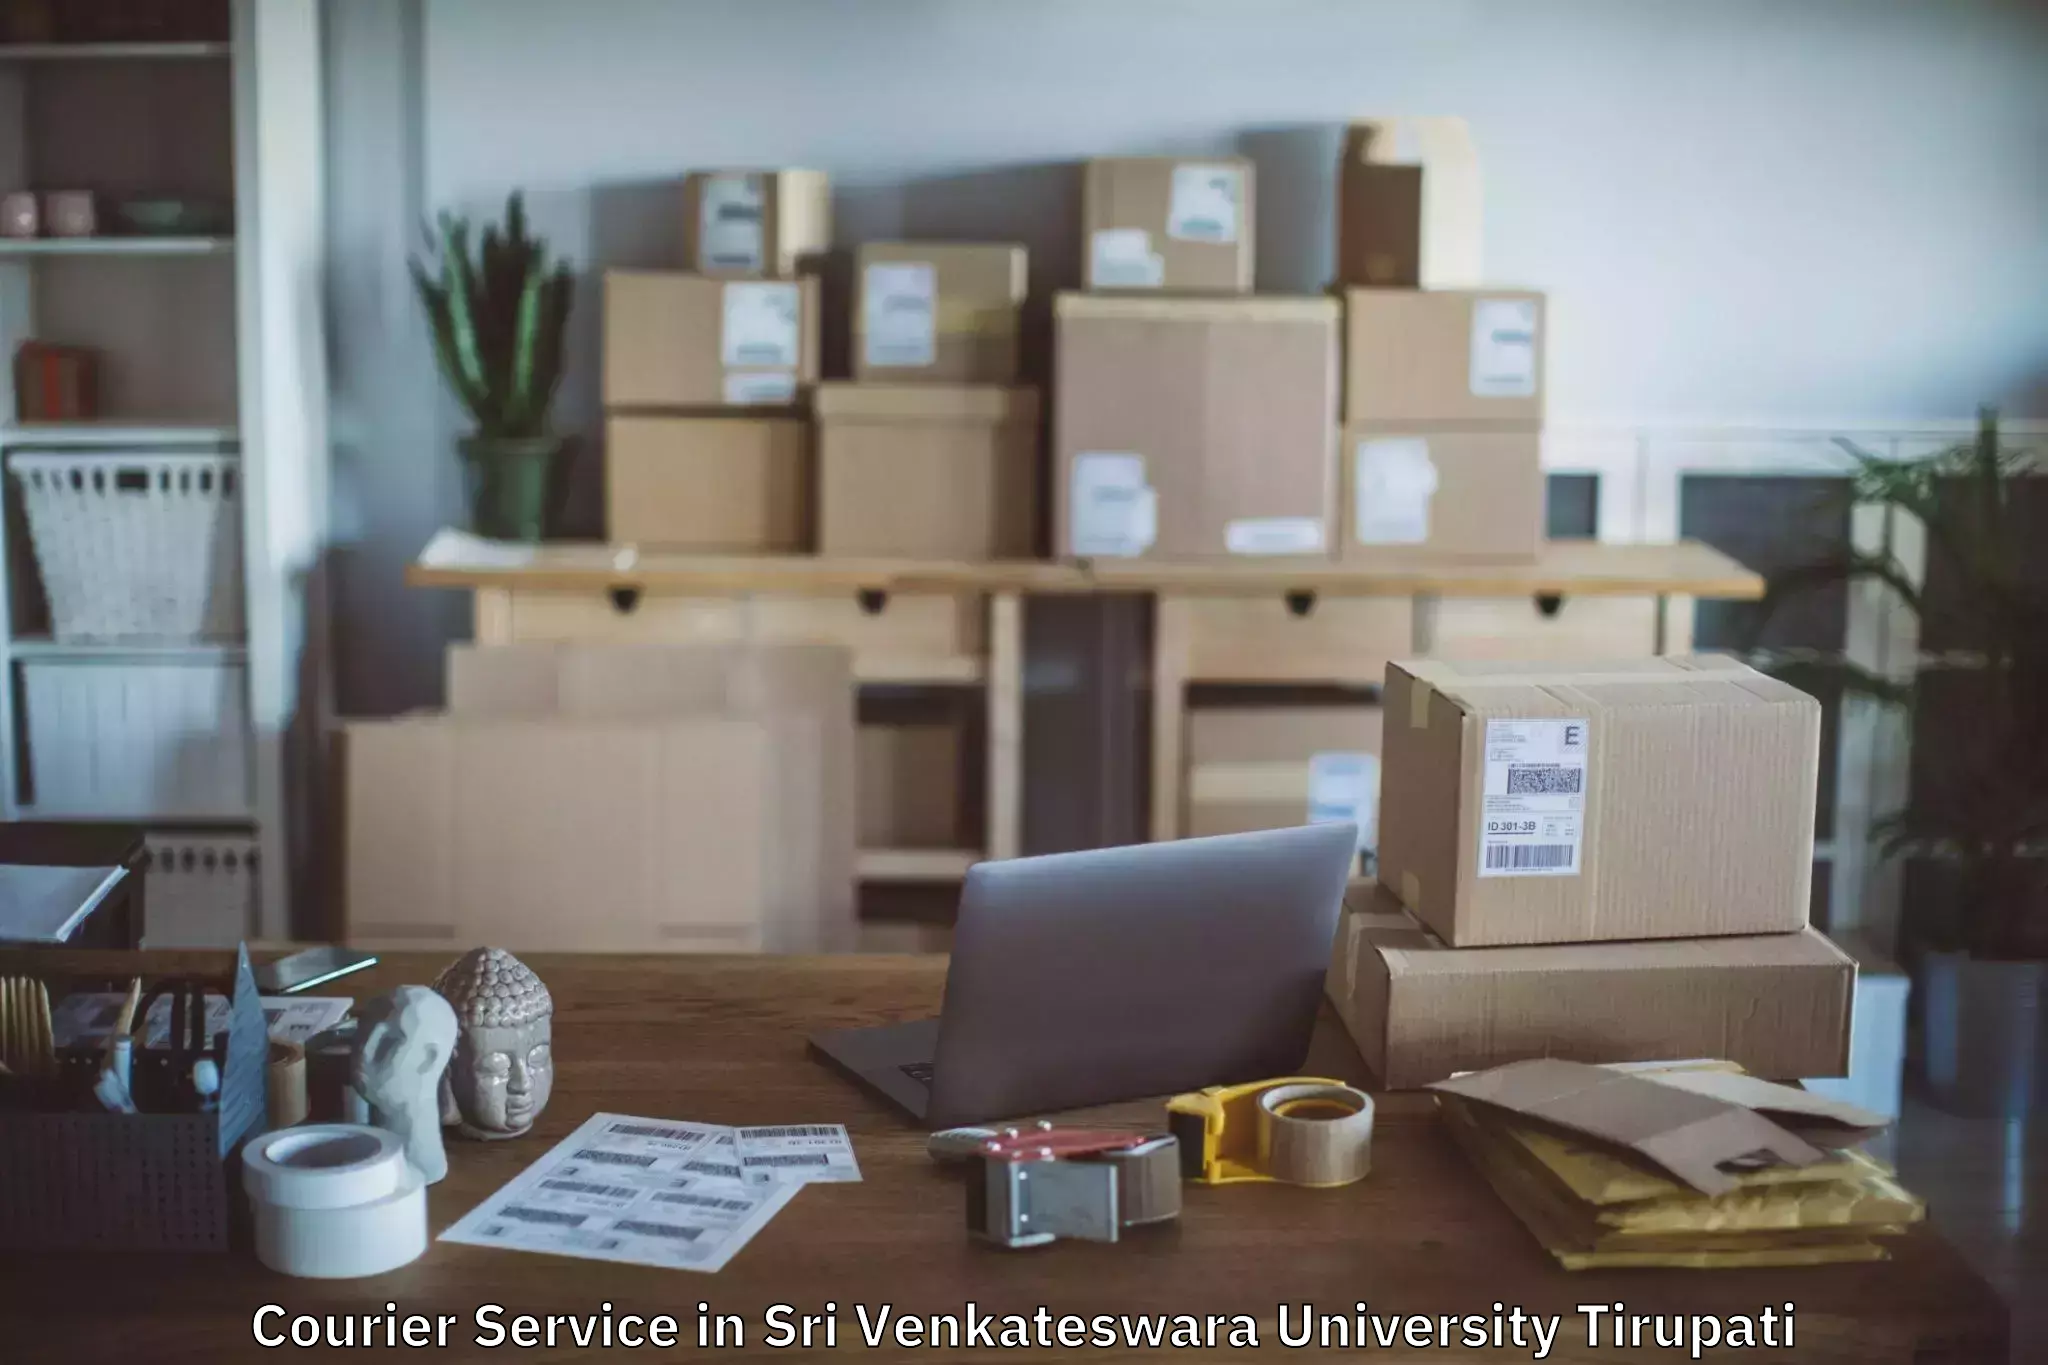 Global shipping networks in Sri Venkateswara University Tirupati